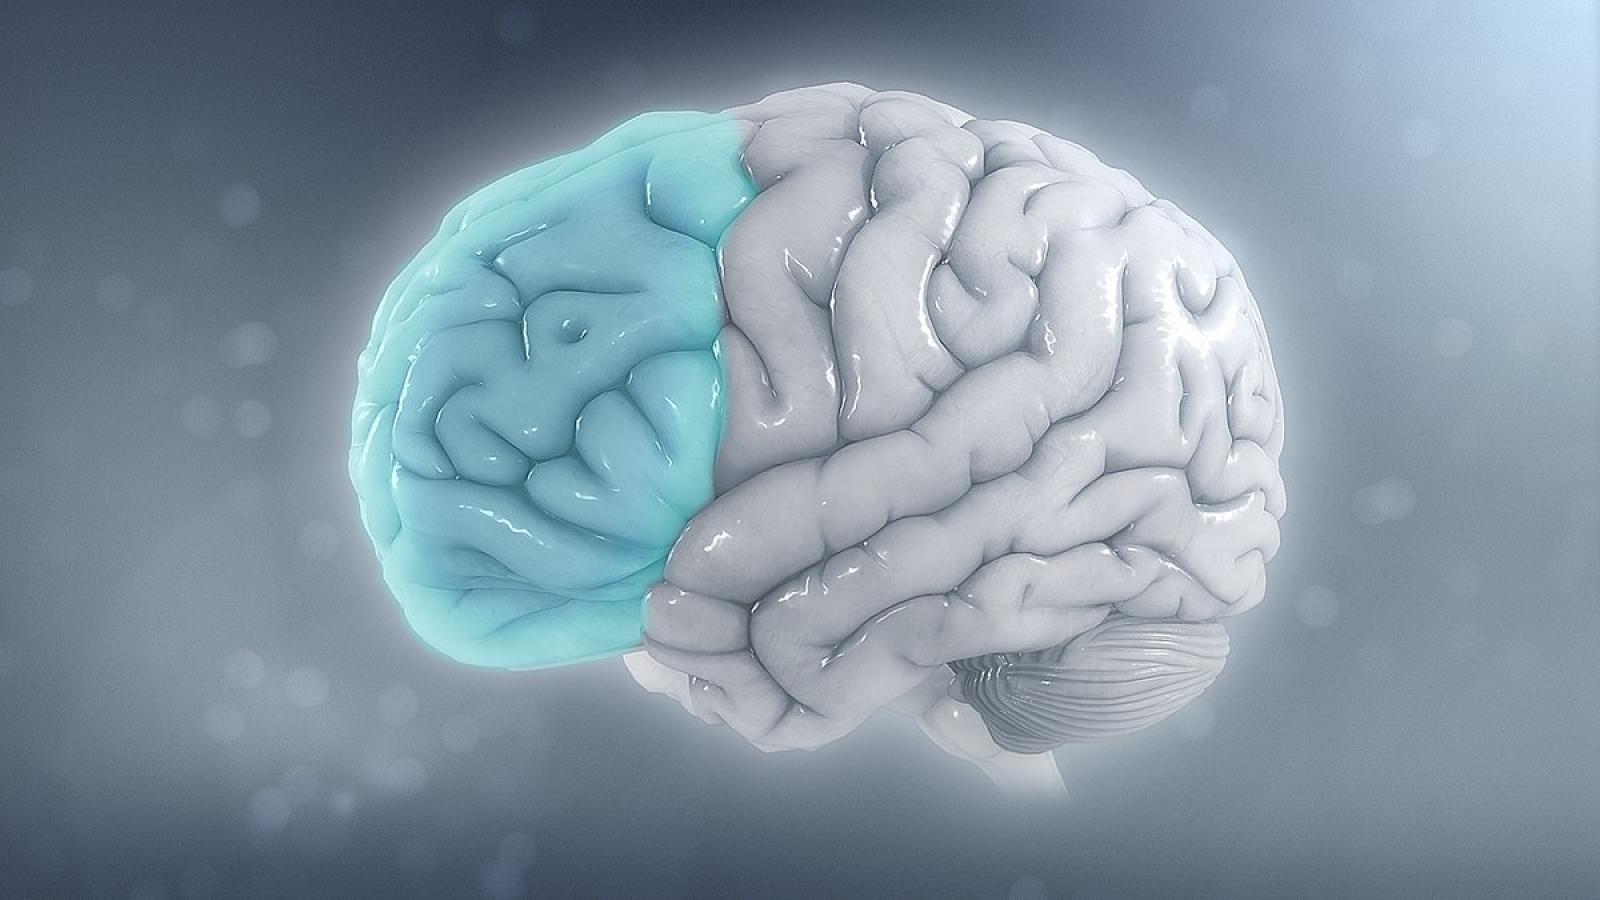 Hémisphère gauche d'un cerveau humain avec cortex préfrontal en bleu